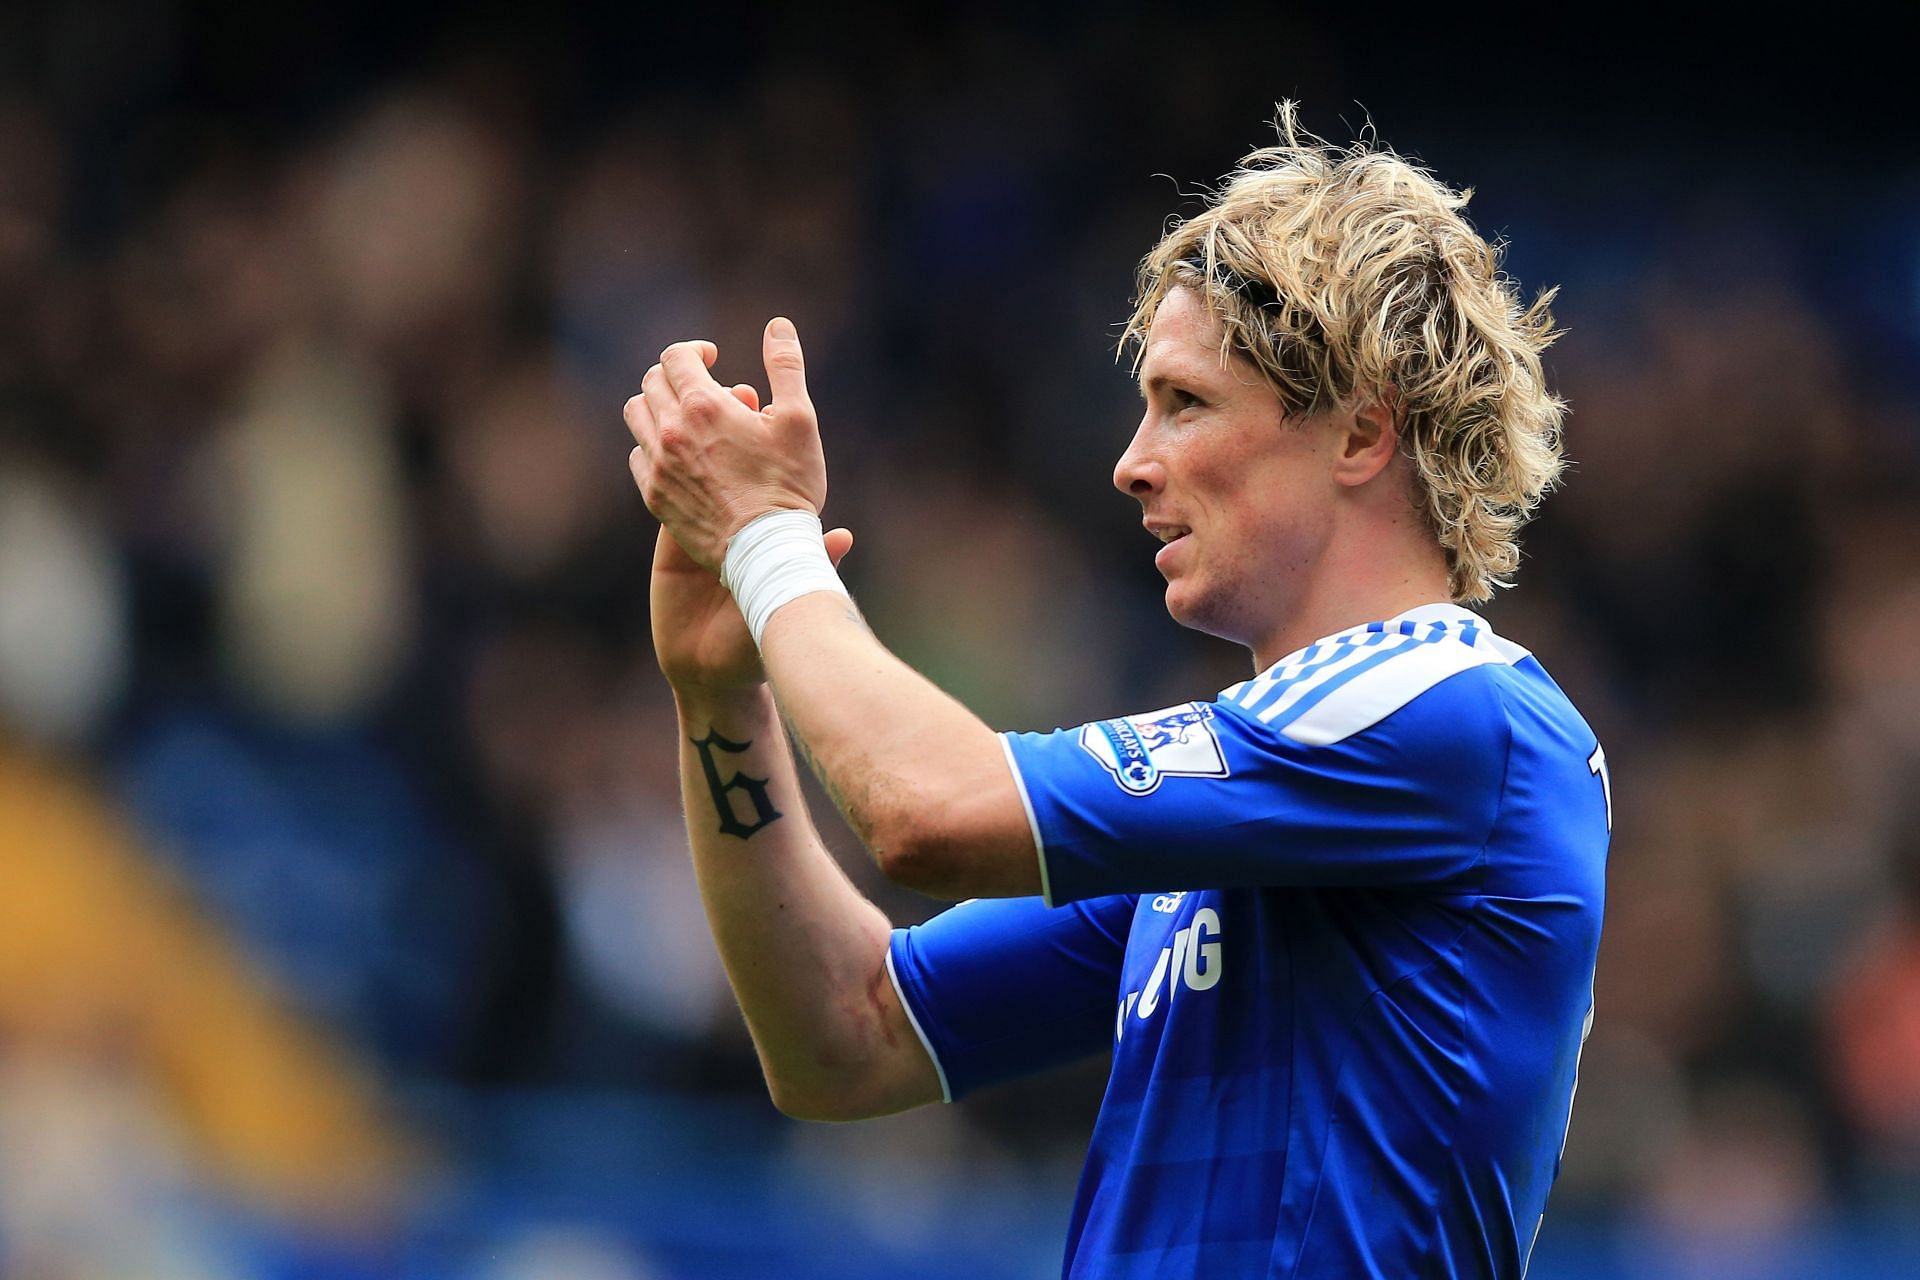 Fernando Torres - Striker